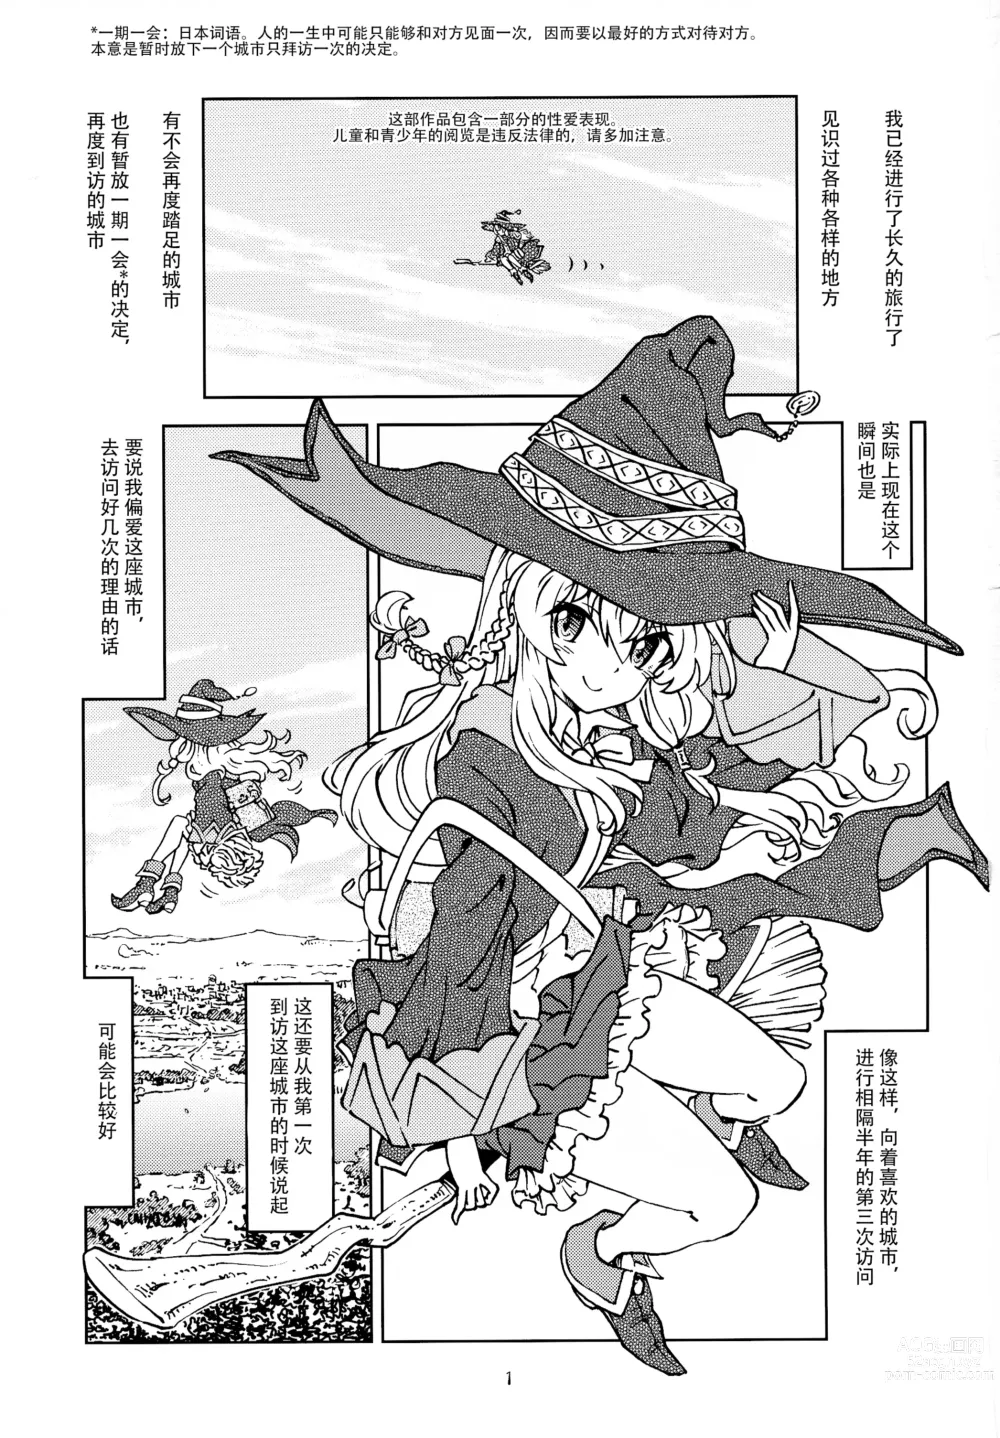 Page 3 of doujinshi 旅行日记里不能记录的事情